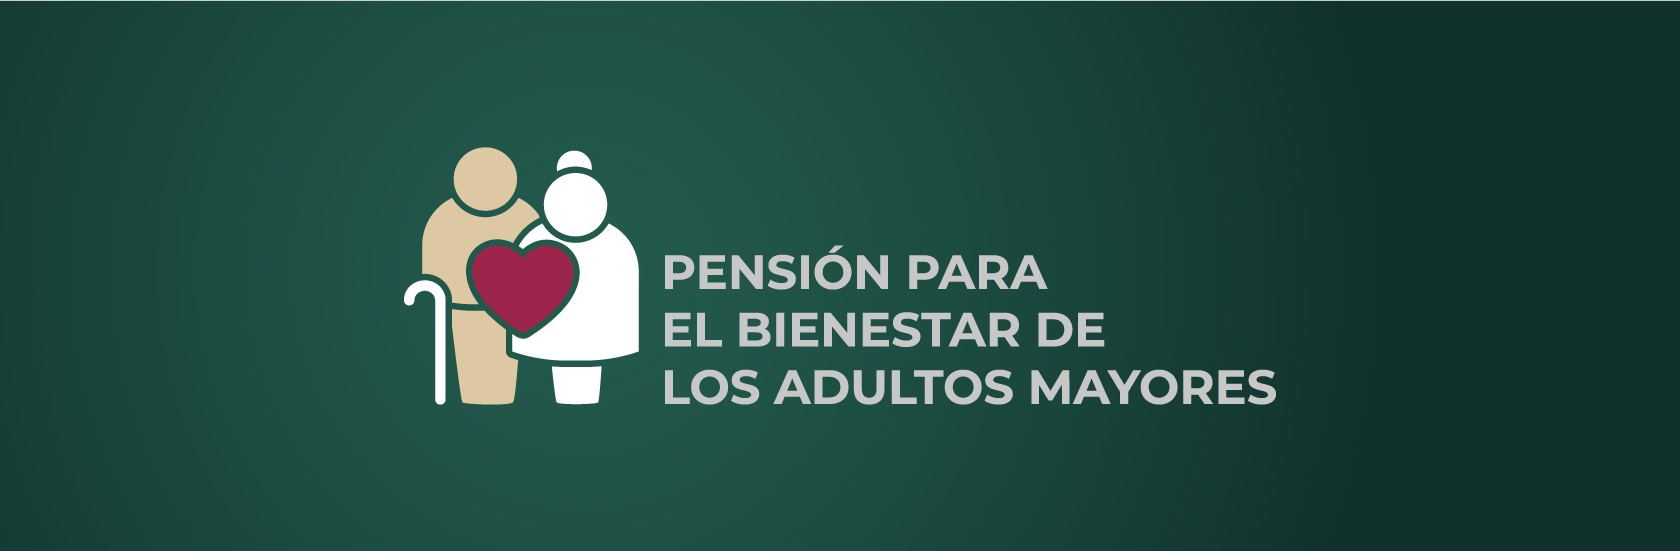 Pensión Universal para Personas Adultas Mayores | Campaña | gob.mx